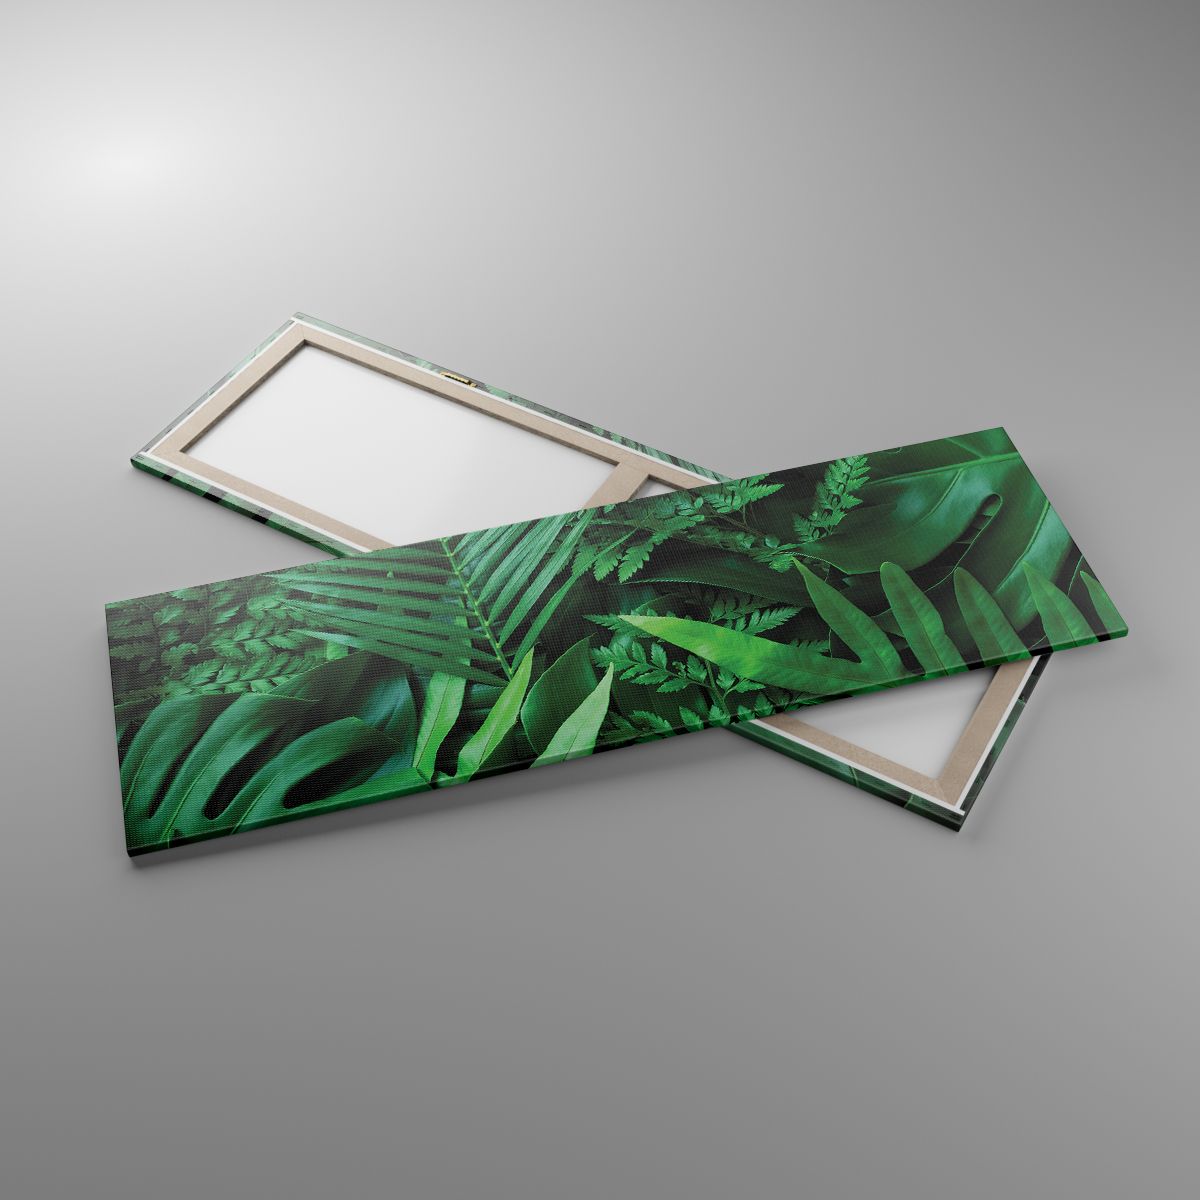 Leinwandbild Exotische Pflanze, Leinwandbild Palmblatt, Leinwandbild Monstera-Blatt, Leinwandbild Natur, Leinwandbild Tropen